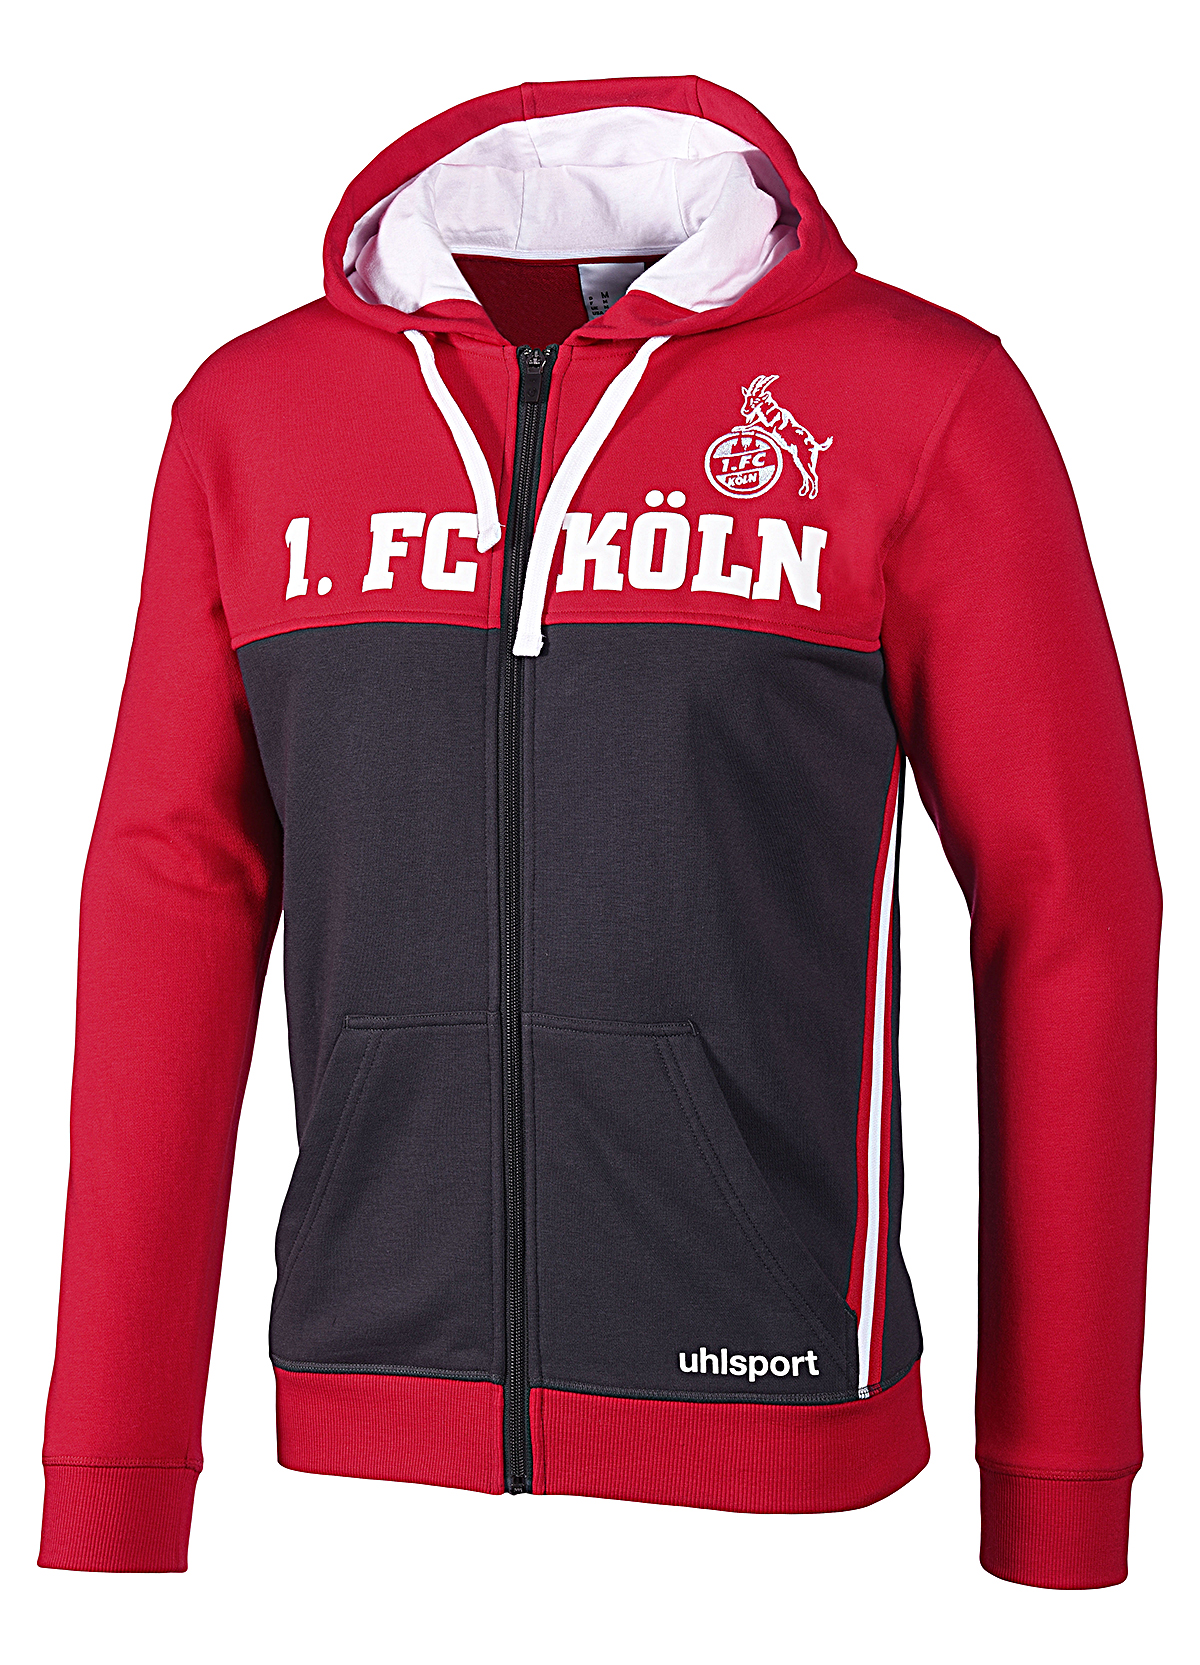 Uhlsport 1.FC Köln Sportswear Jacke Herren Sweatjacke Trainingsjacke Full Zip anthrazit/rot